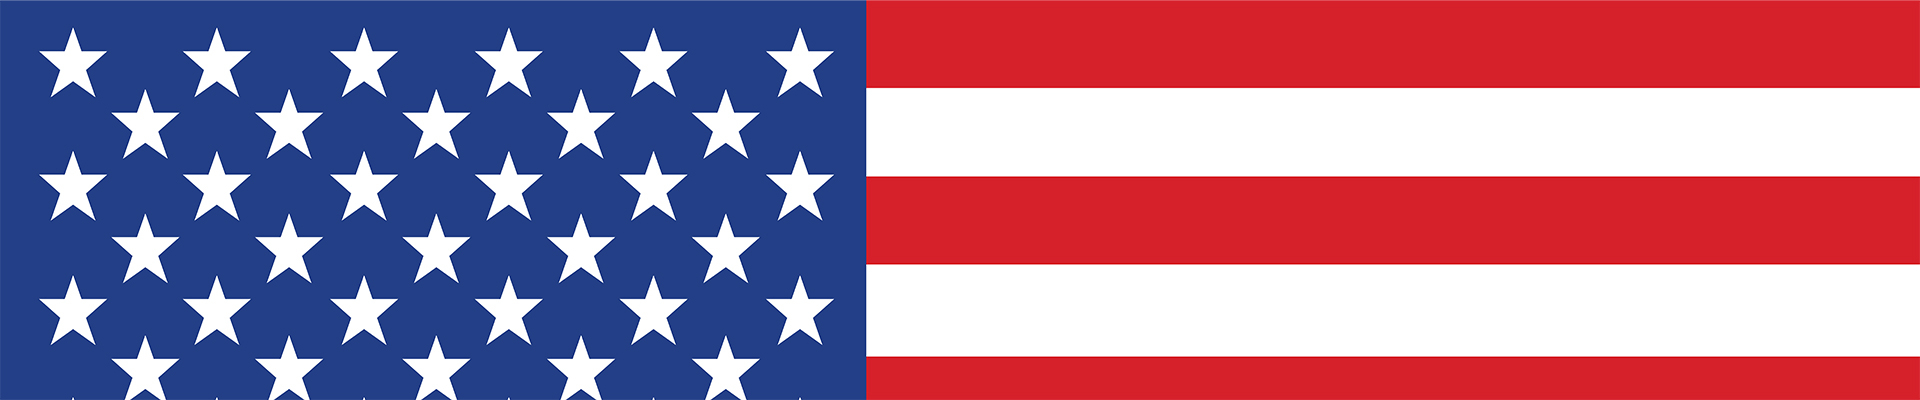 Team USA vs. Dominican Republic live stream — US flag